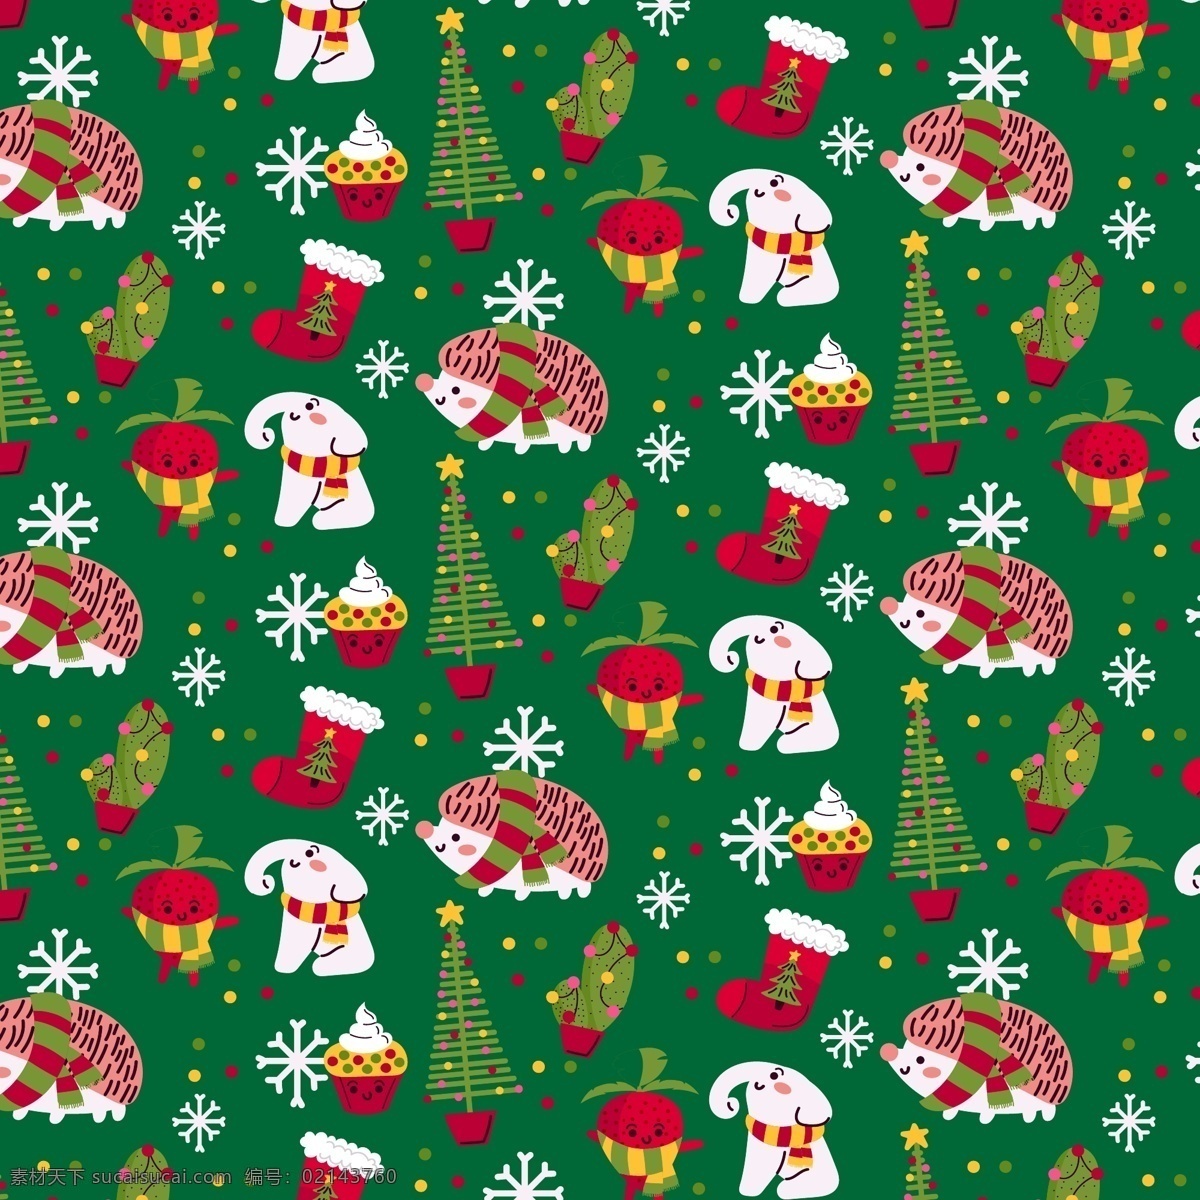 圣诞 大象 刺猬 背景图片 冰淇淋 草莓 纸杯蛋糕 圣诞树 雪花 圣诞袜 矢量 高清图片